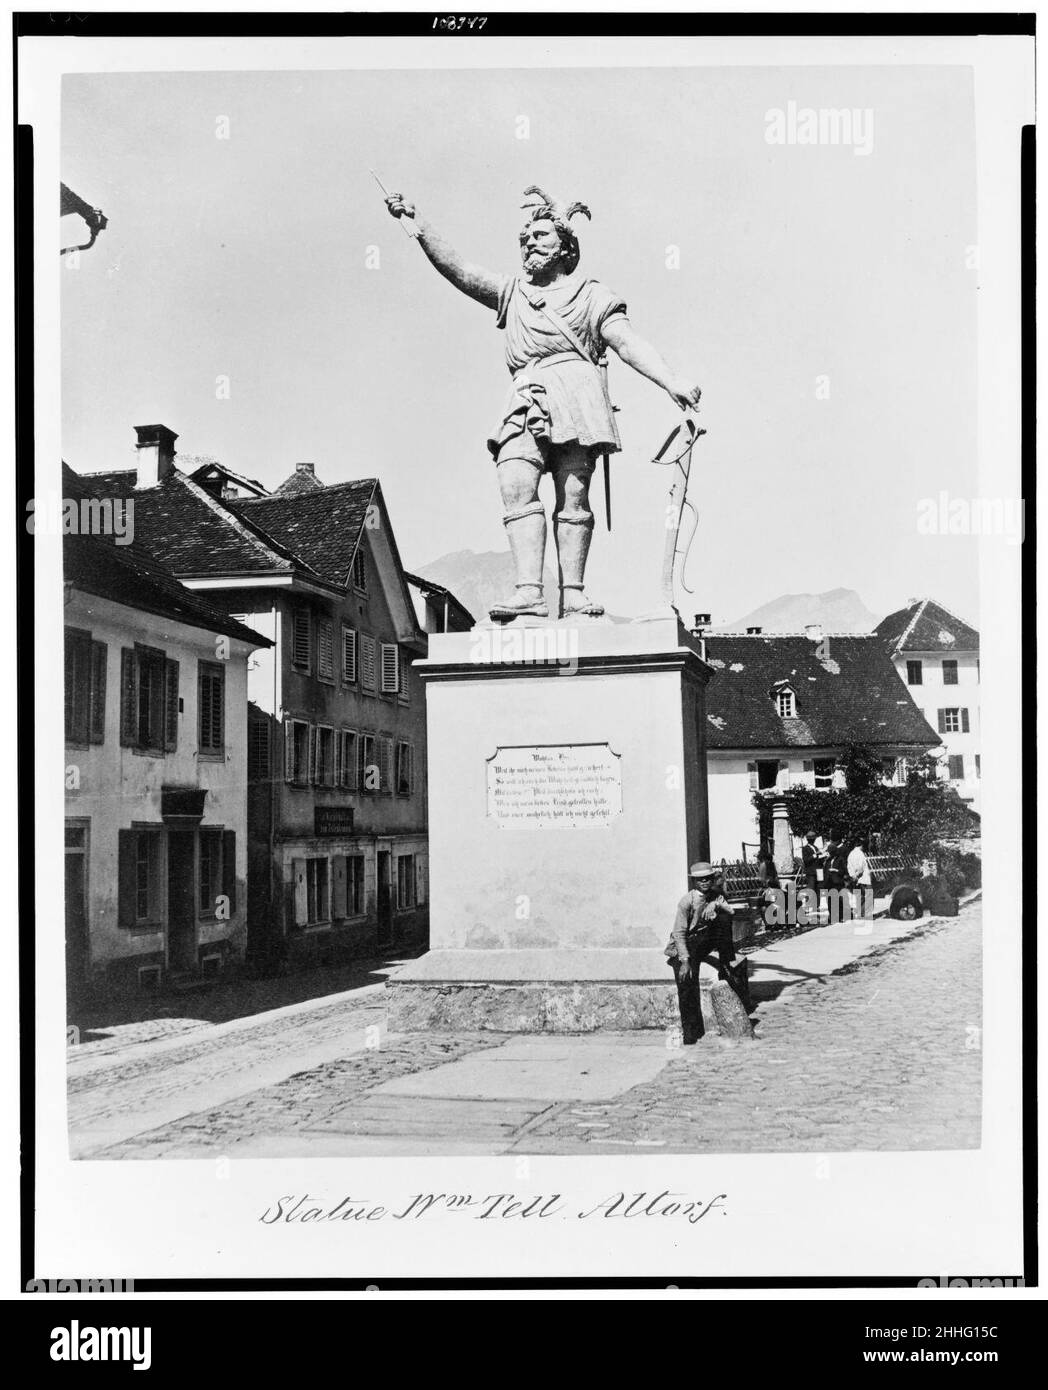 Statue Wm. Erzählen. Altorf Stockfoto